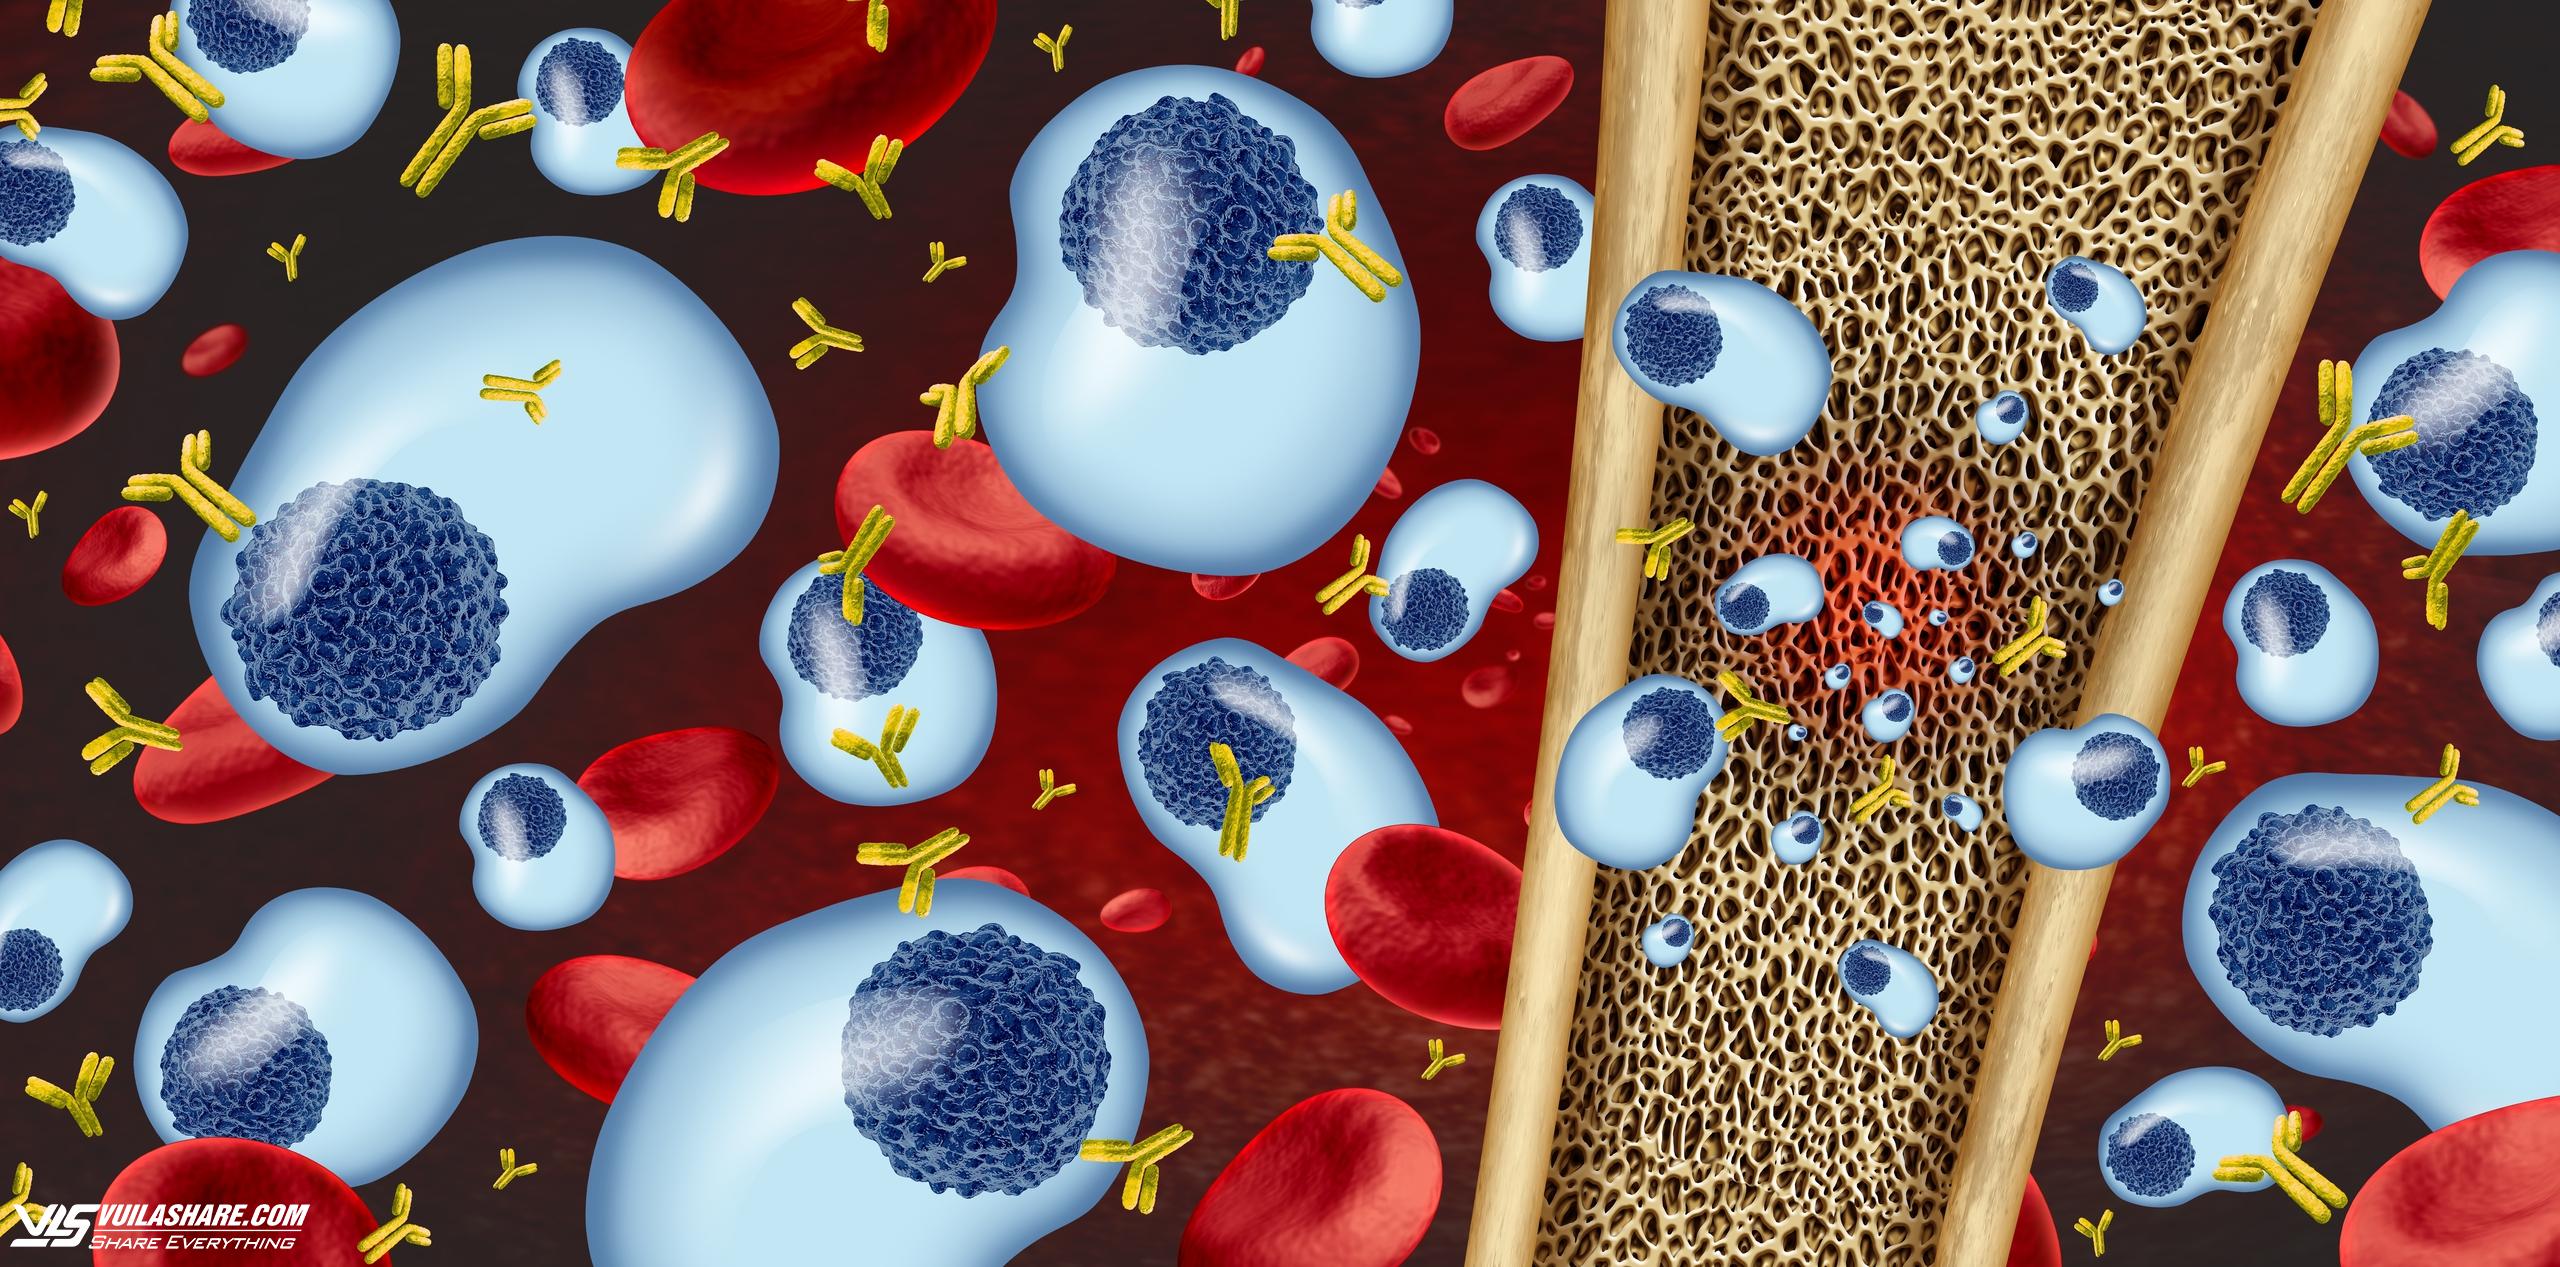 Bệnh đa u tuỷ xương gây ra do rối loạn tế bào plasma (màu xanh), hình thành các ổ tiêu xương. Nguồn ảnh minh hoạ: Shutterstock